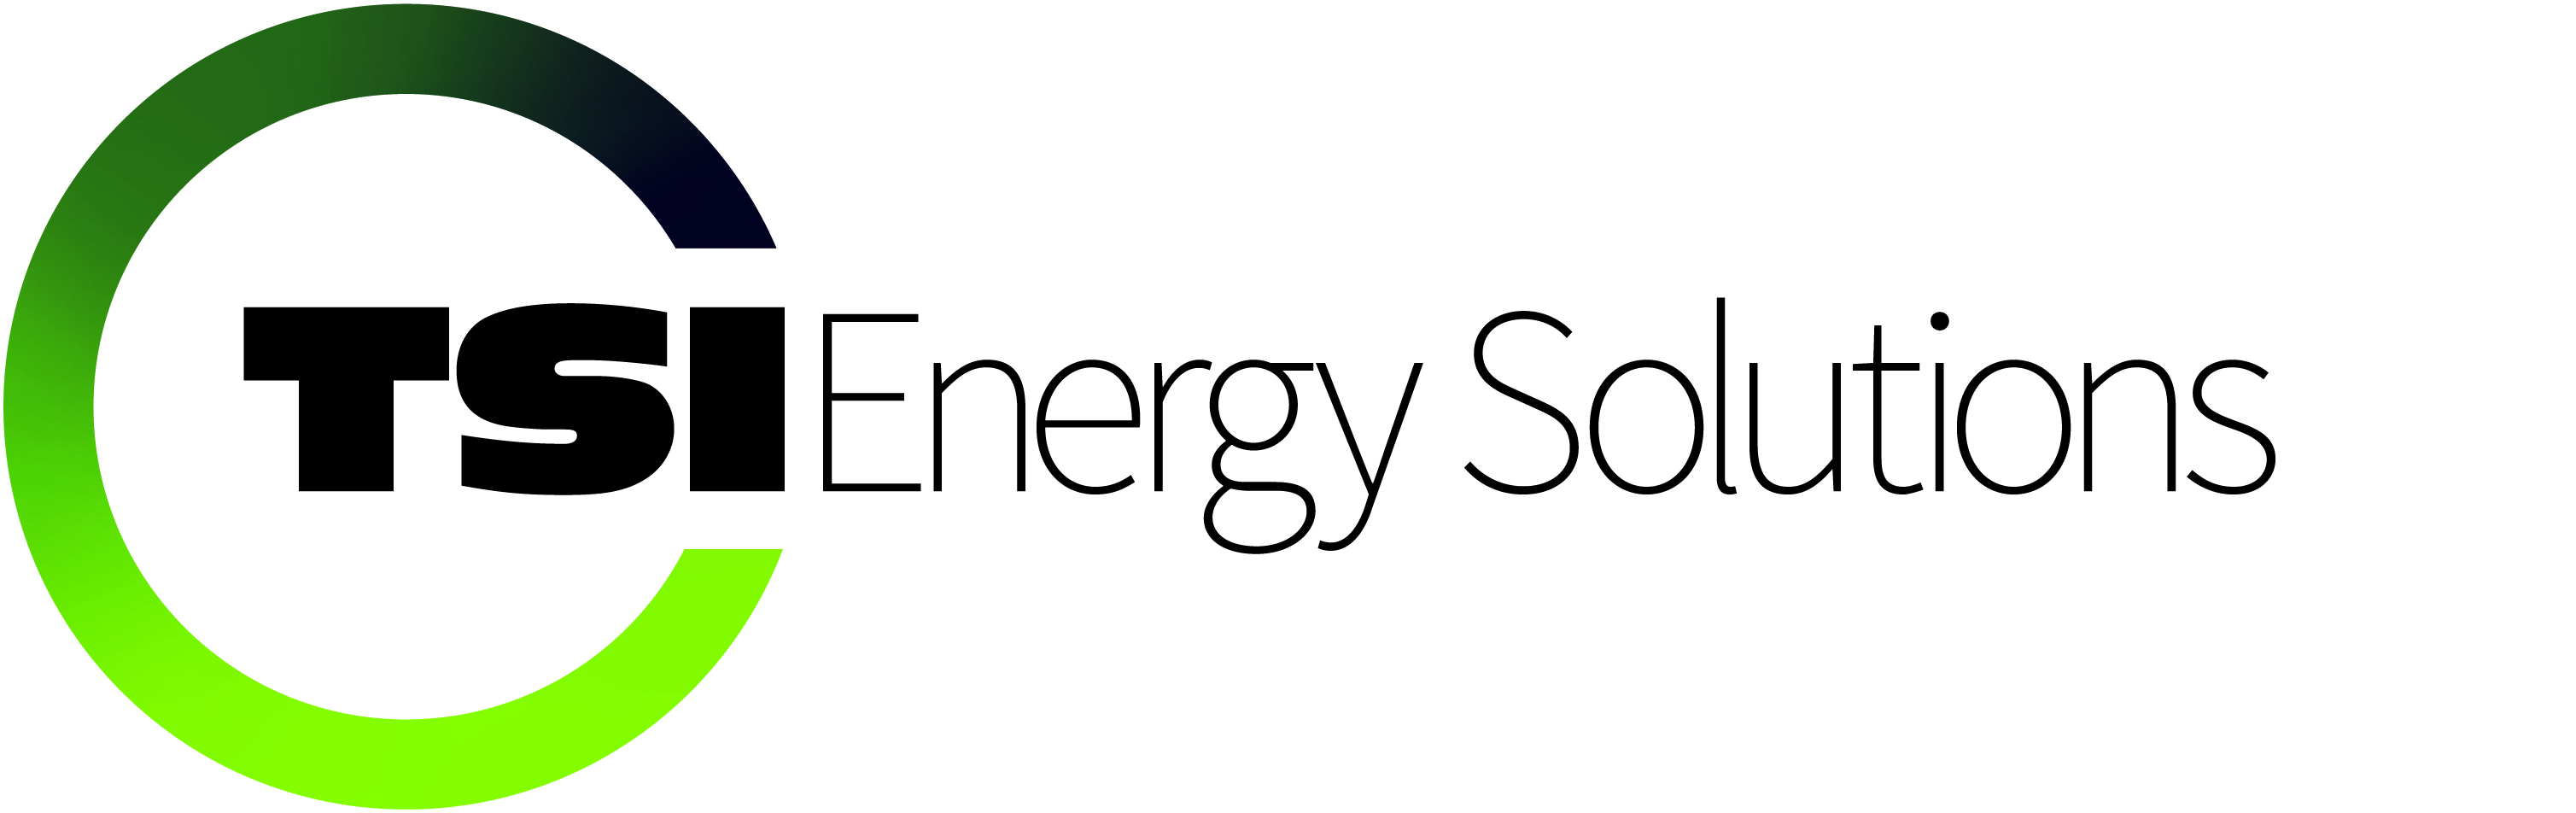 TSI Energy Solutions company logo